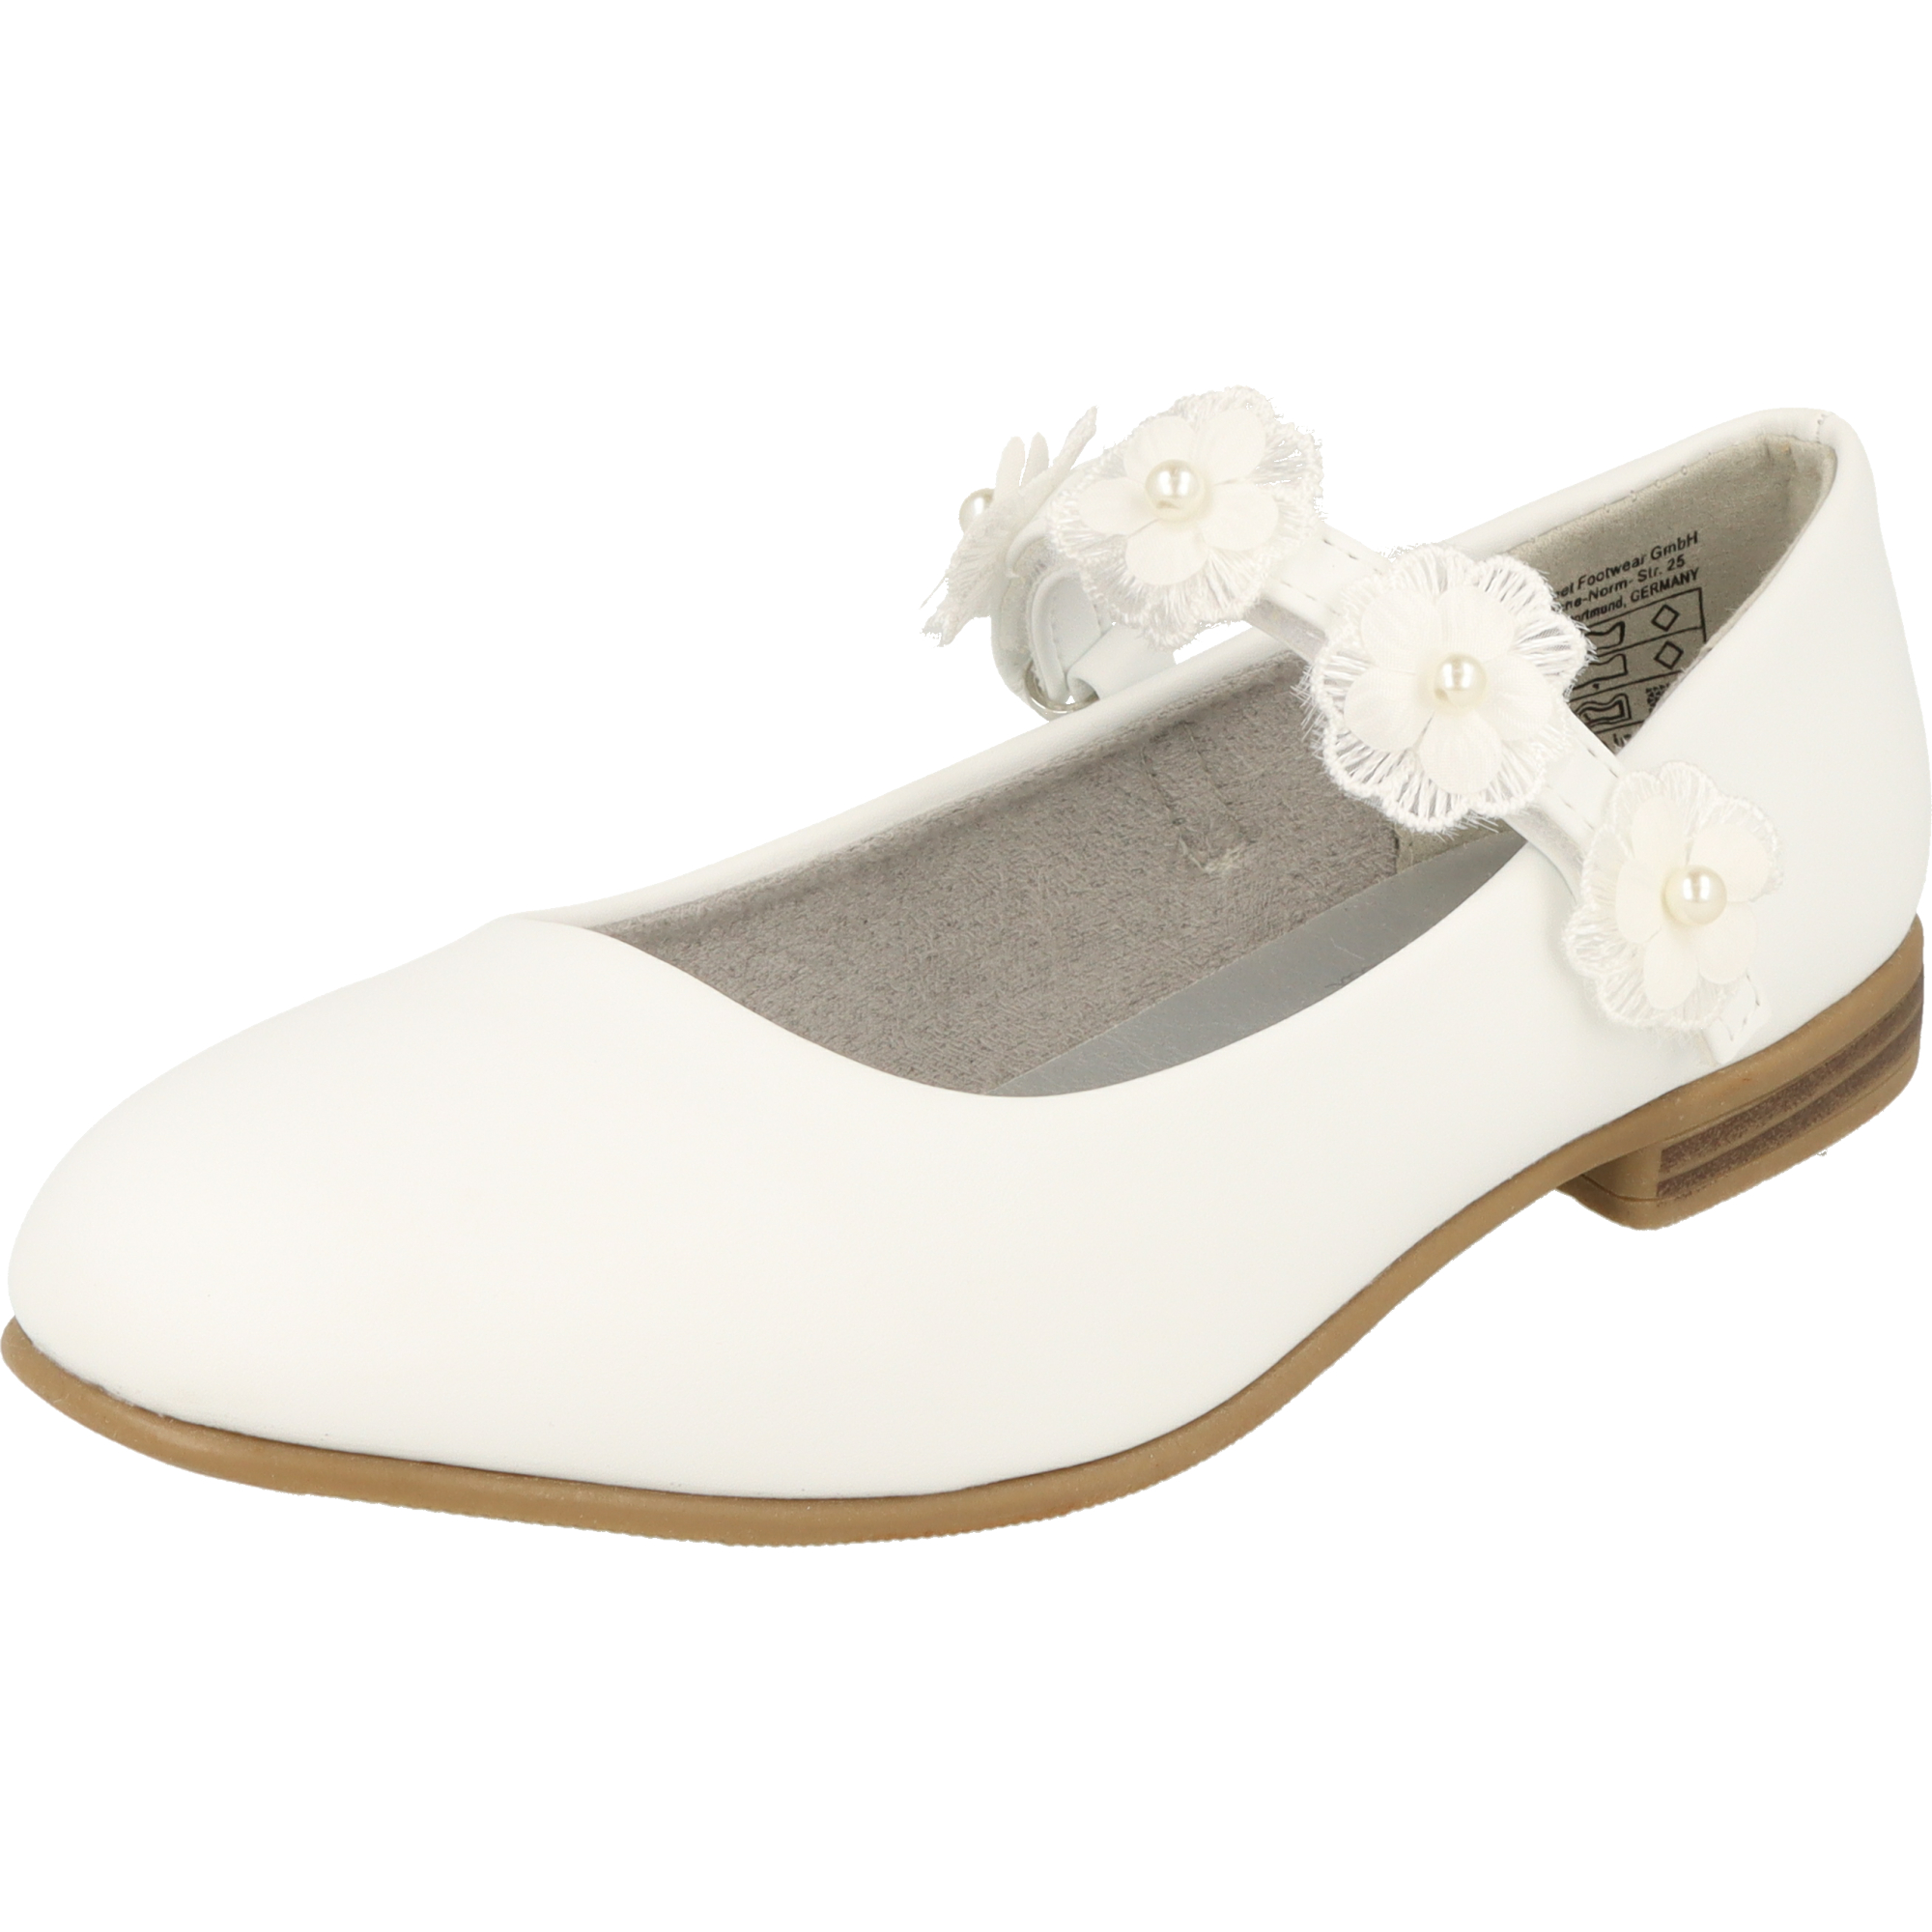 Indigo 424-088 Mädchen Ballerina Schuhe Hochzeit Taufe Klett Blumen Weiß